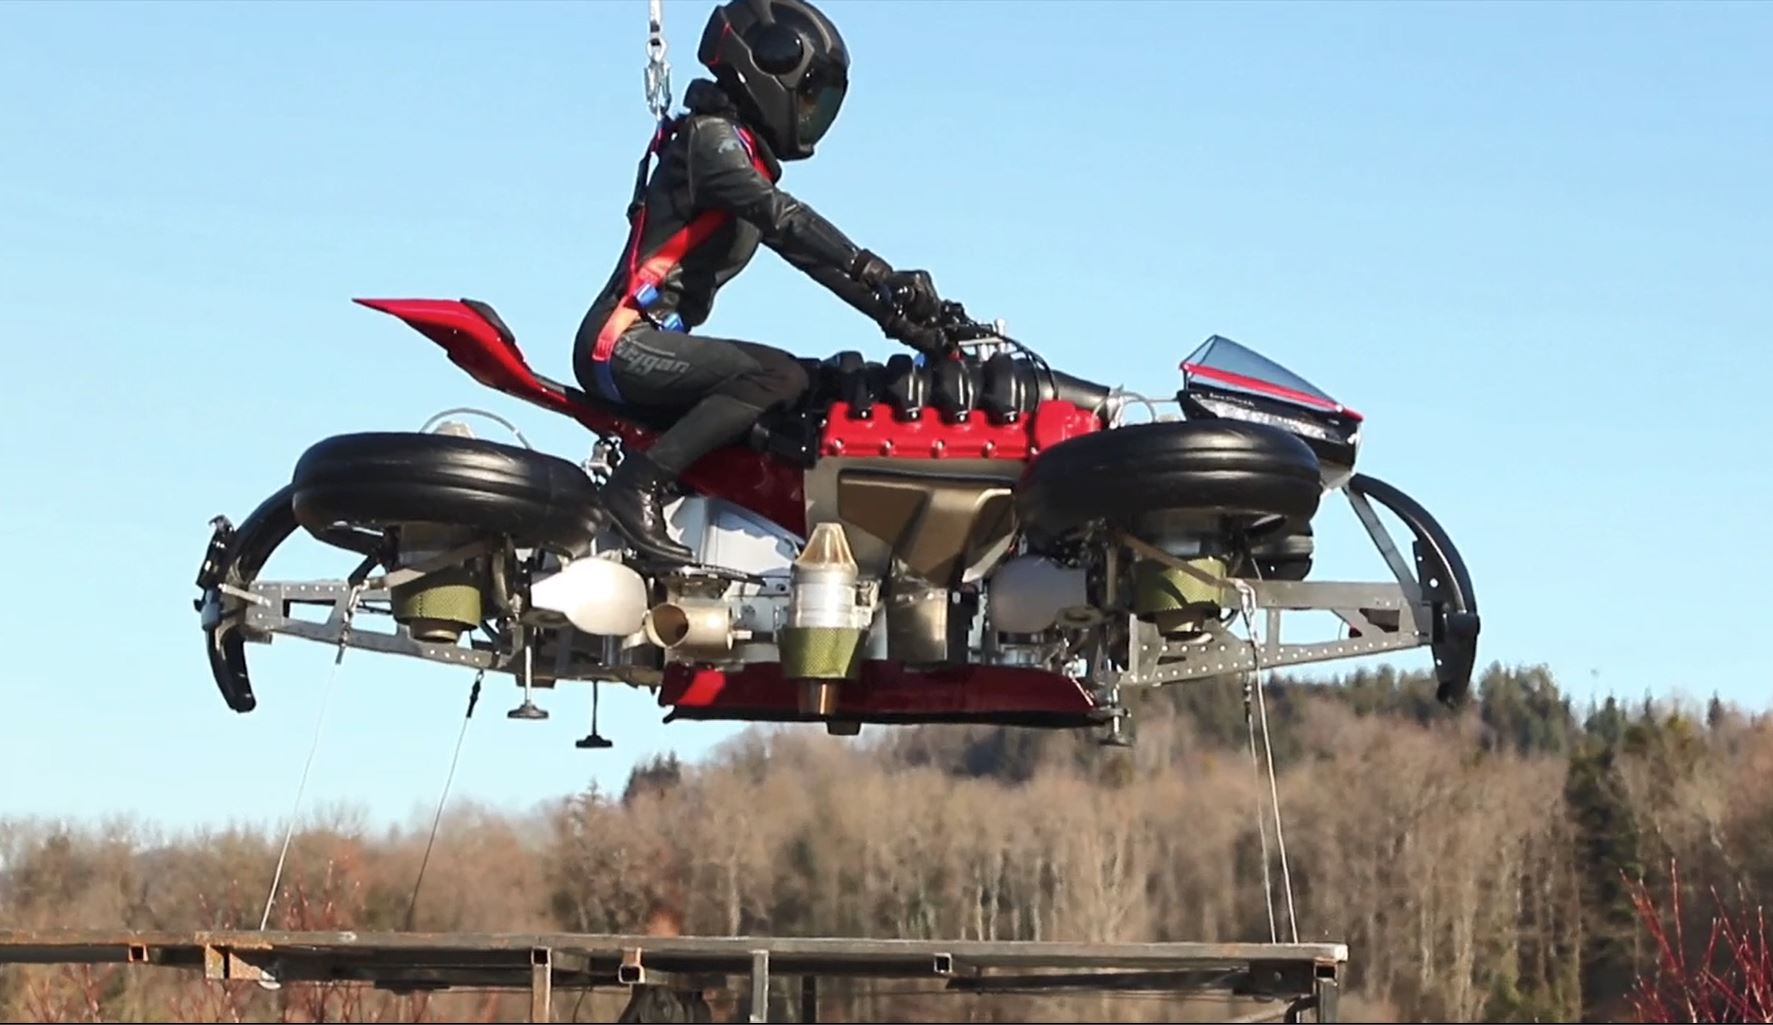 法国公司推出可飞行的摩托车 一键带你空中飙车